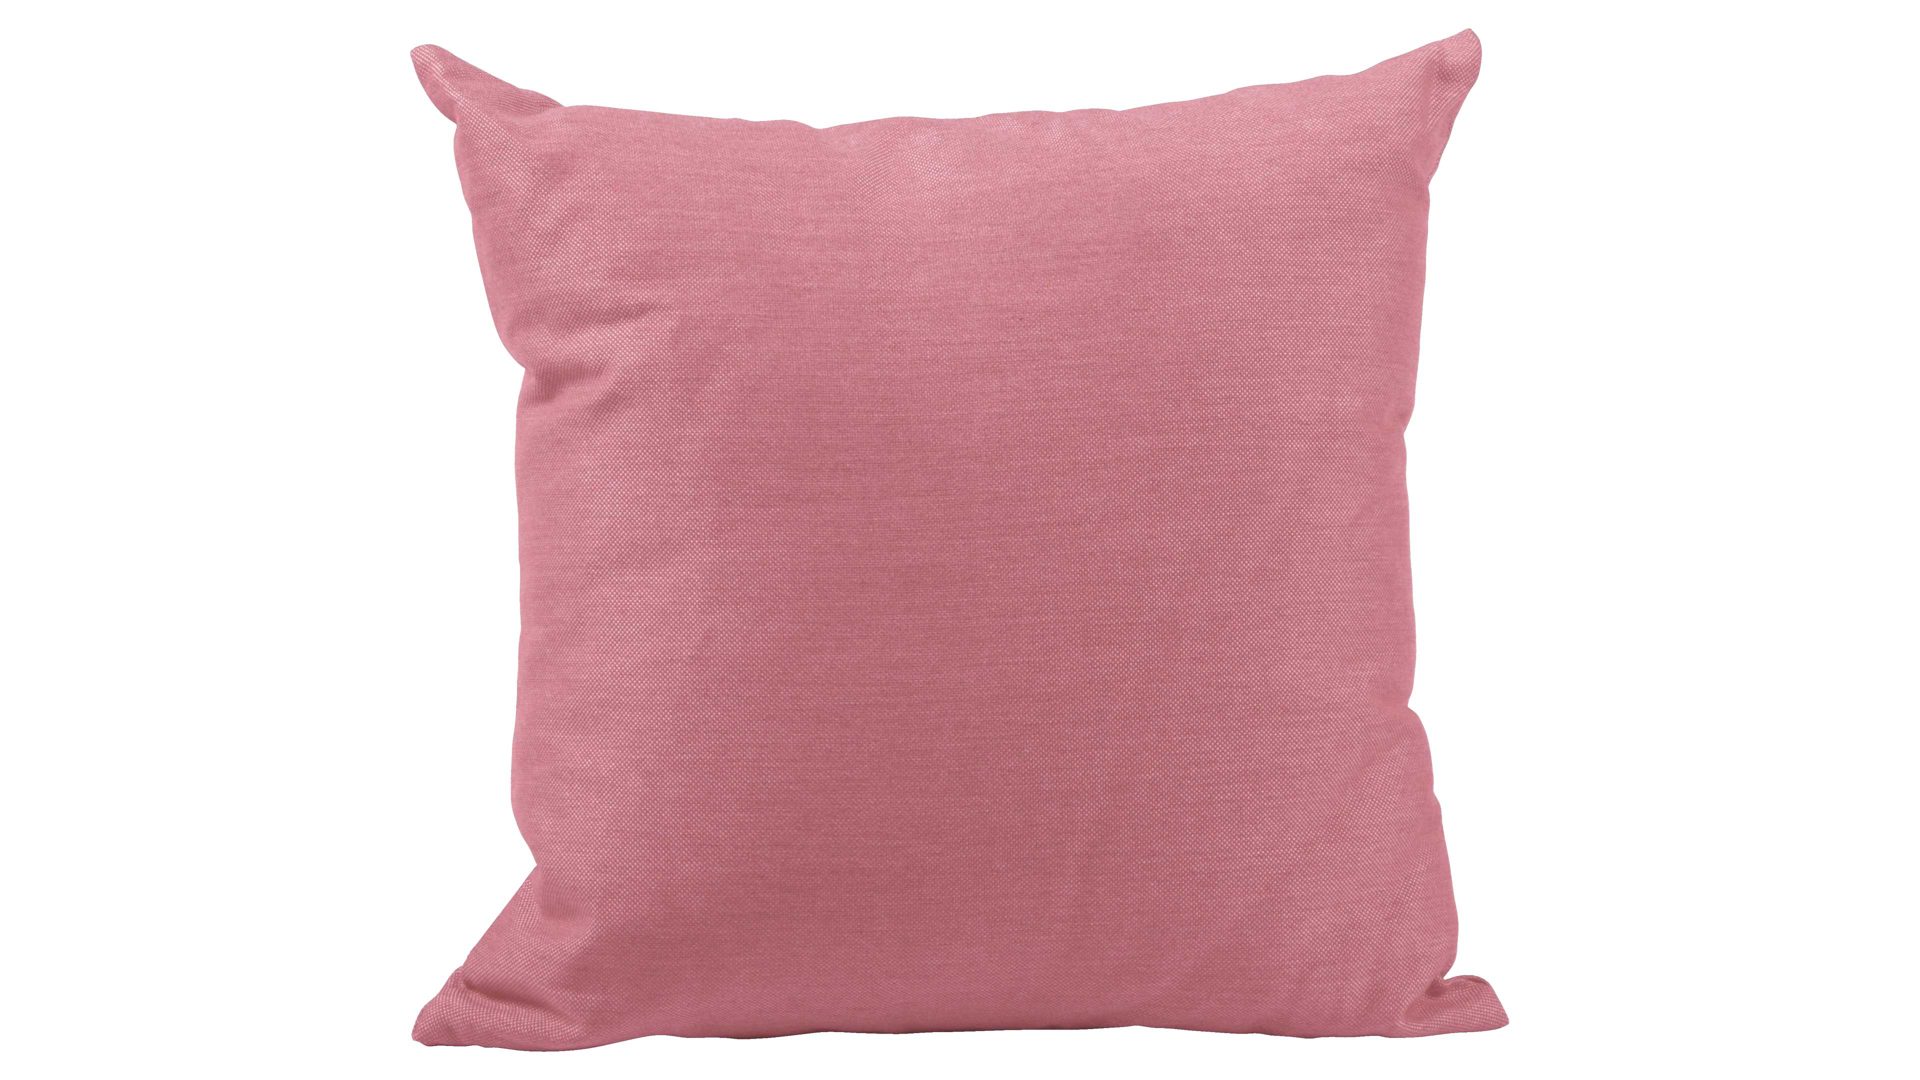 Einzelkissen Stern® aus Kunstfaser in Pink STERN® Gartentextilen Serie pinker Outdoorbezug - ca. 45 x 45 cm